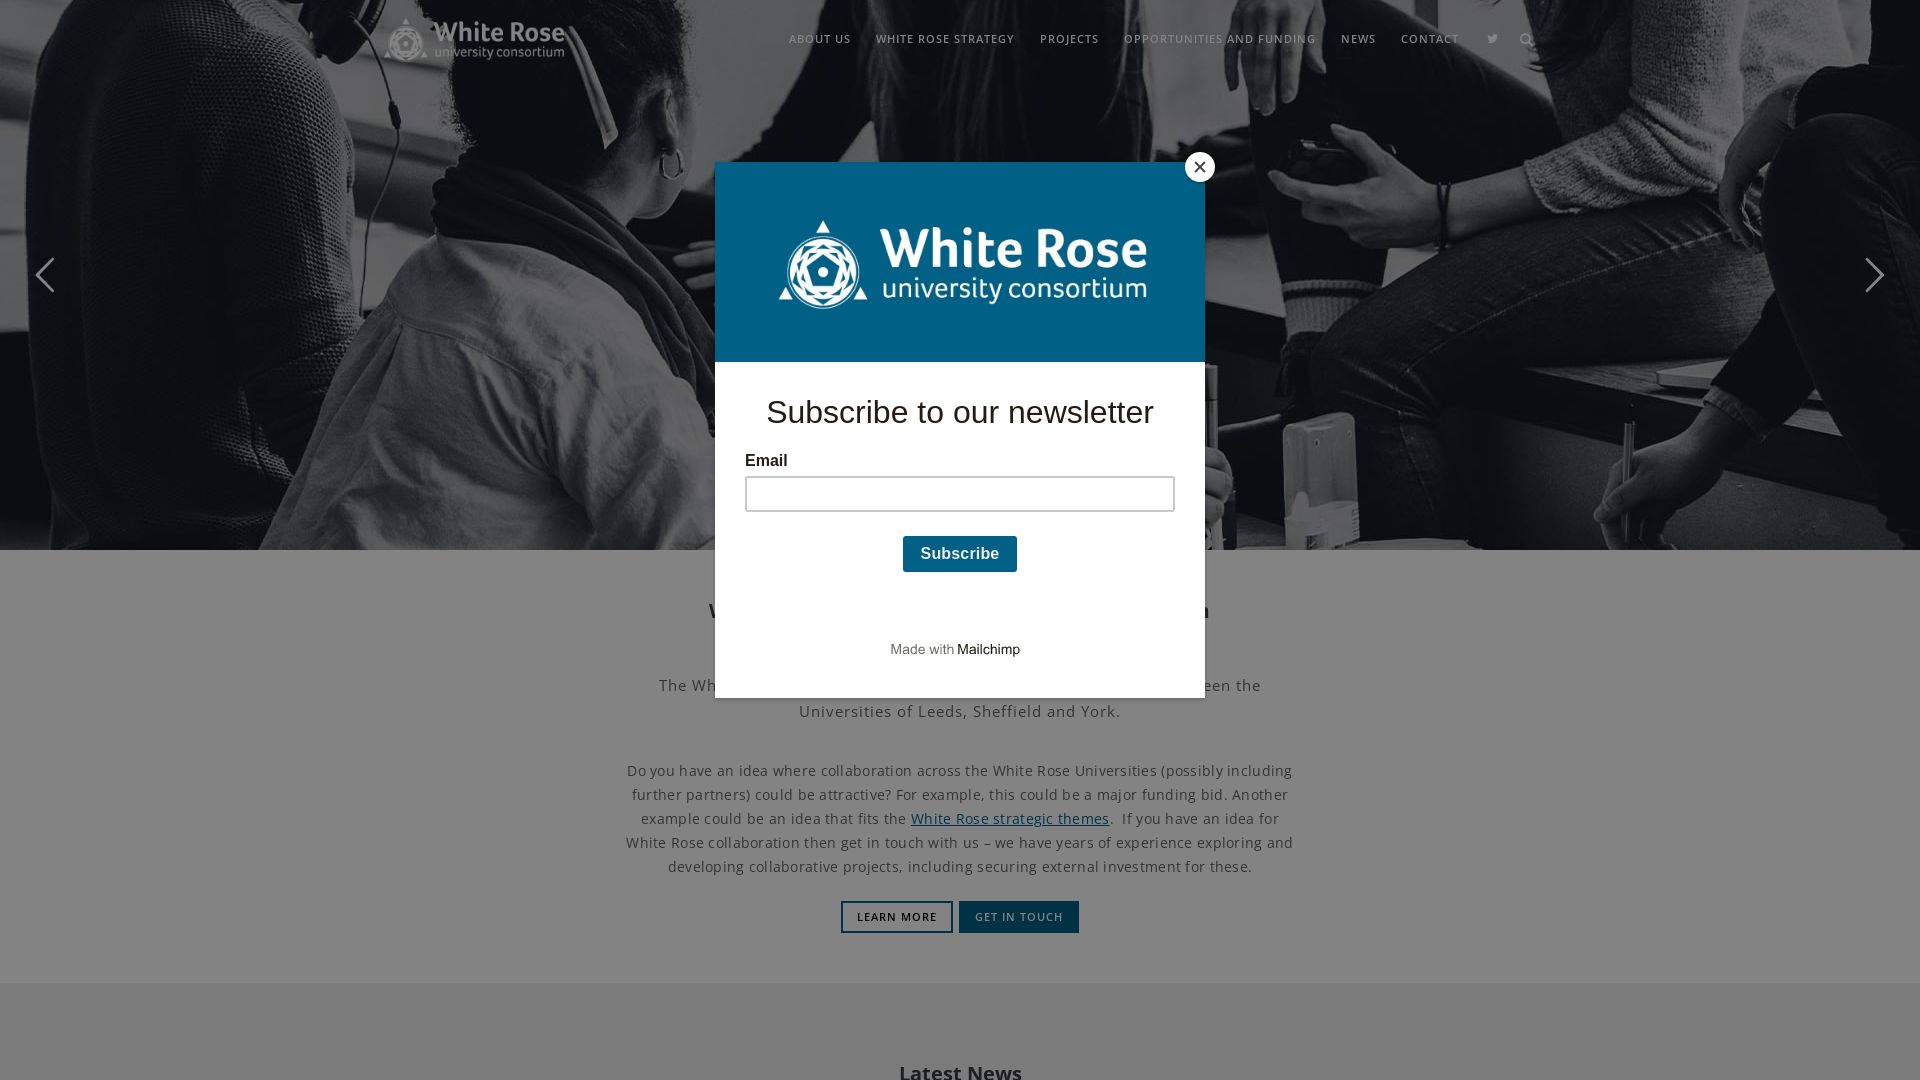 网站状态 whiterose.ac.uk 是  在线的